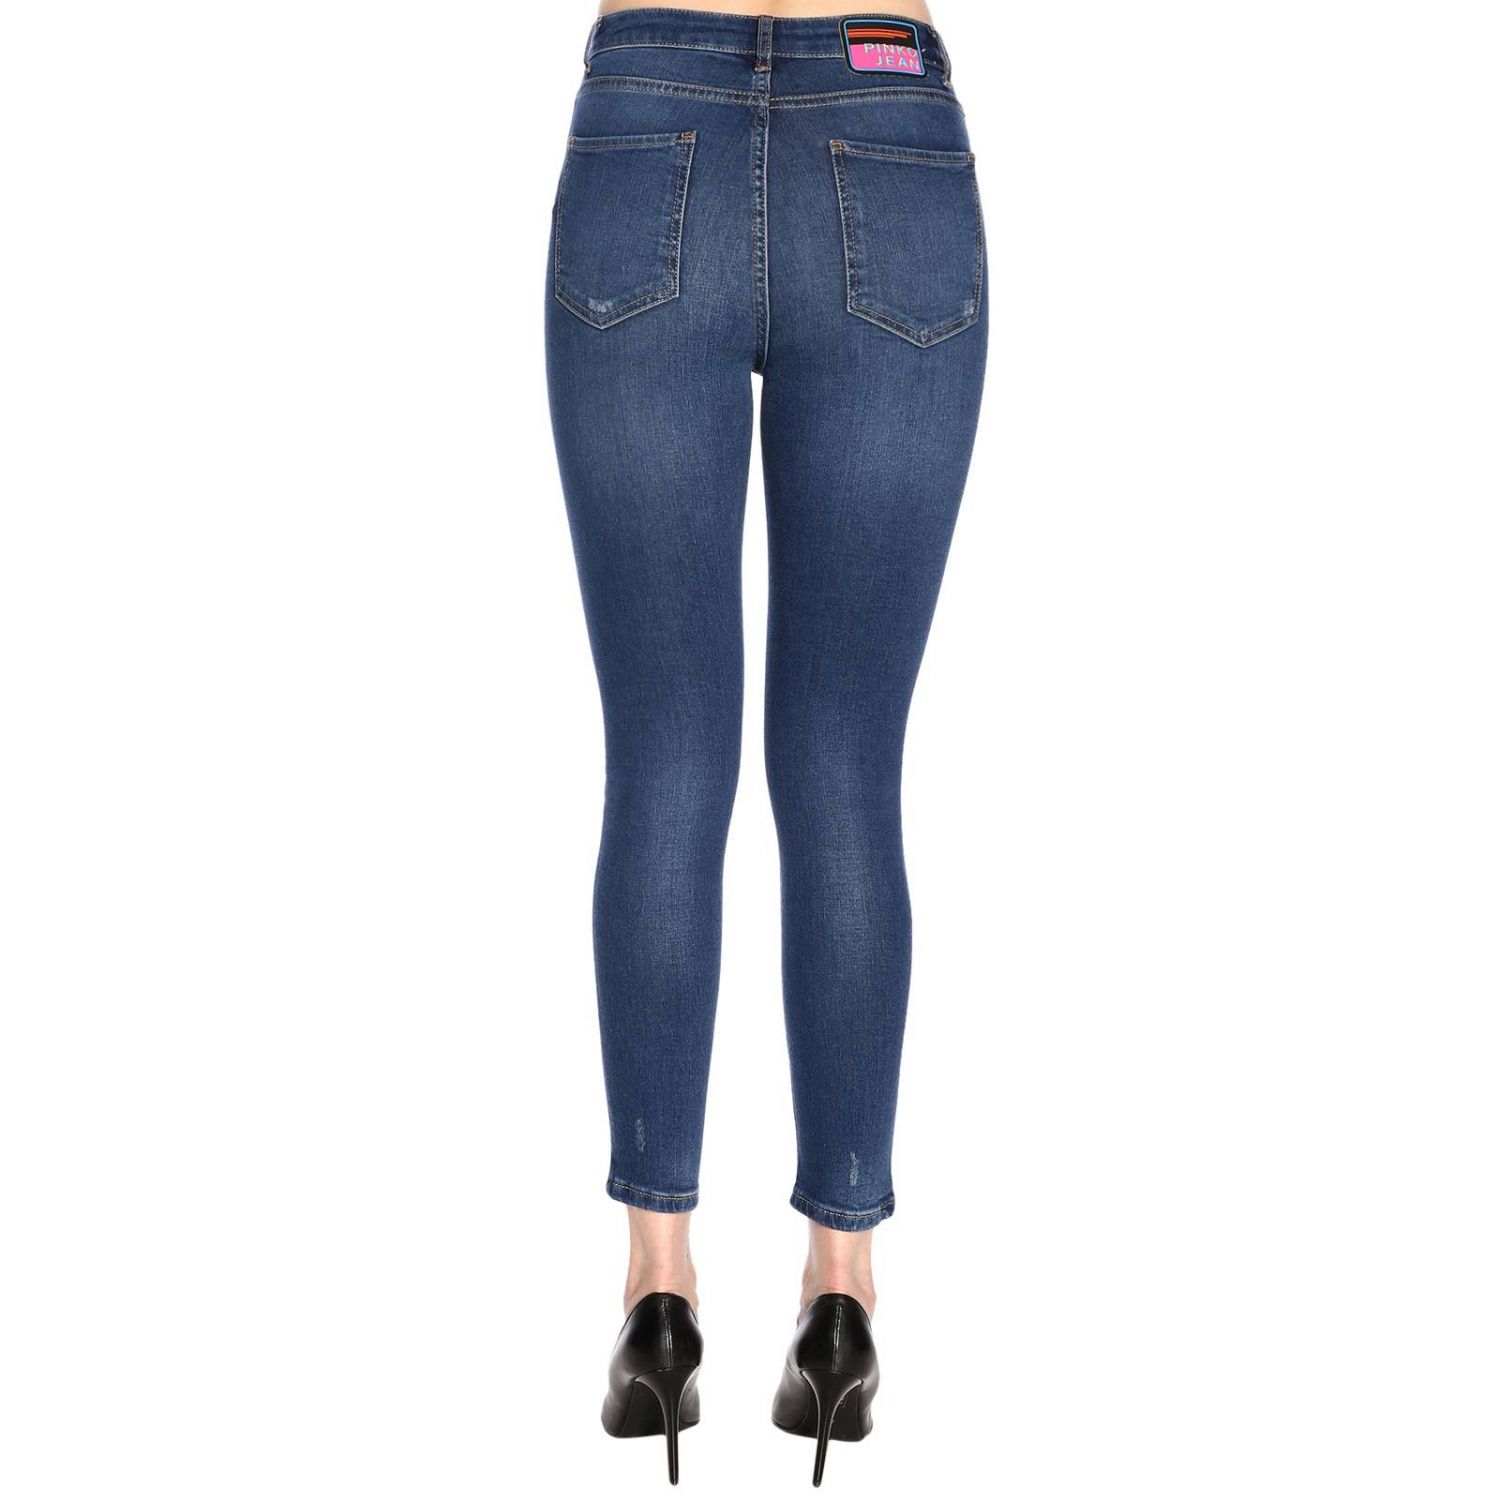 Pinko Jean Outlet: Jeans women - Denim | Jeans Pinko Jean 1X10C3-Y5AC ...